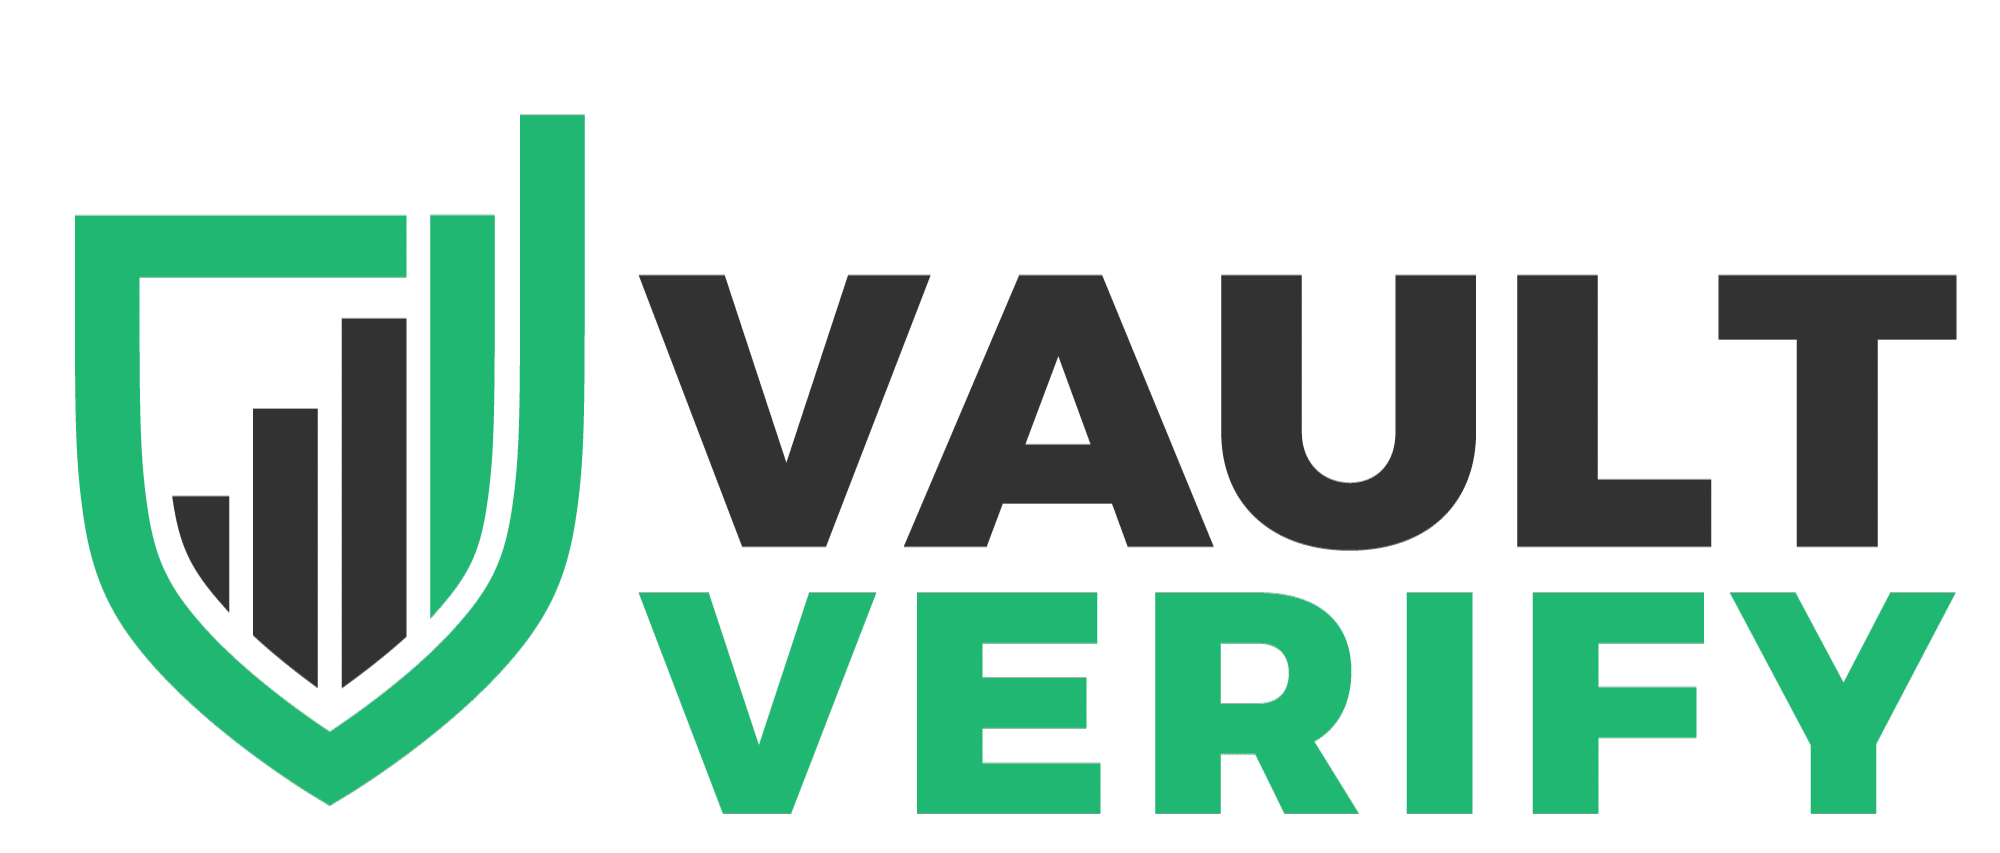 Vault Verify logo